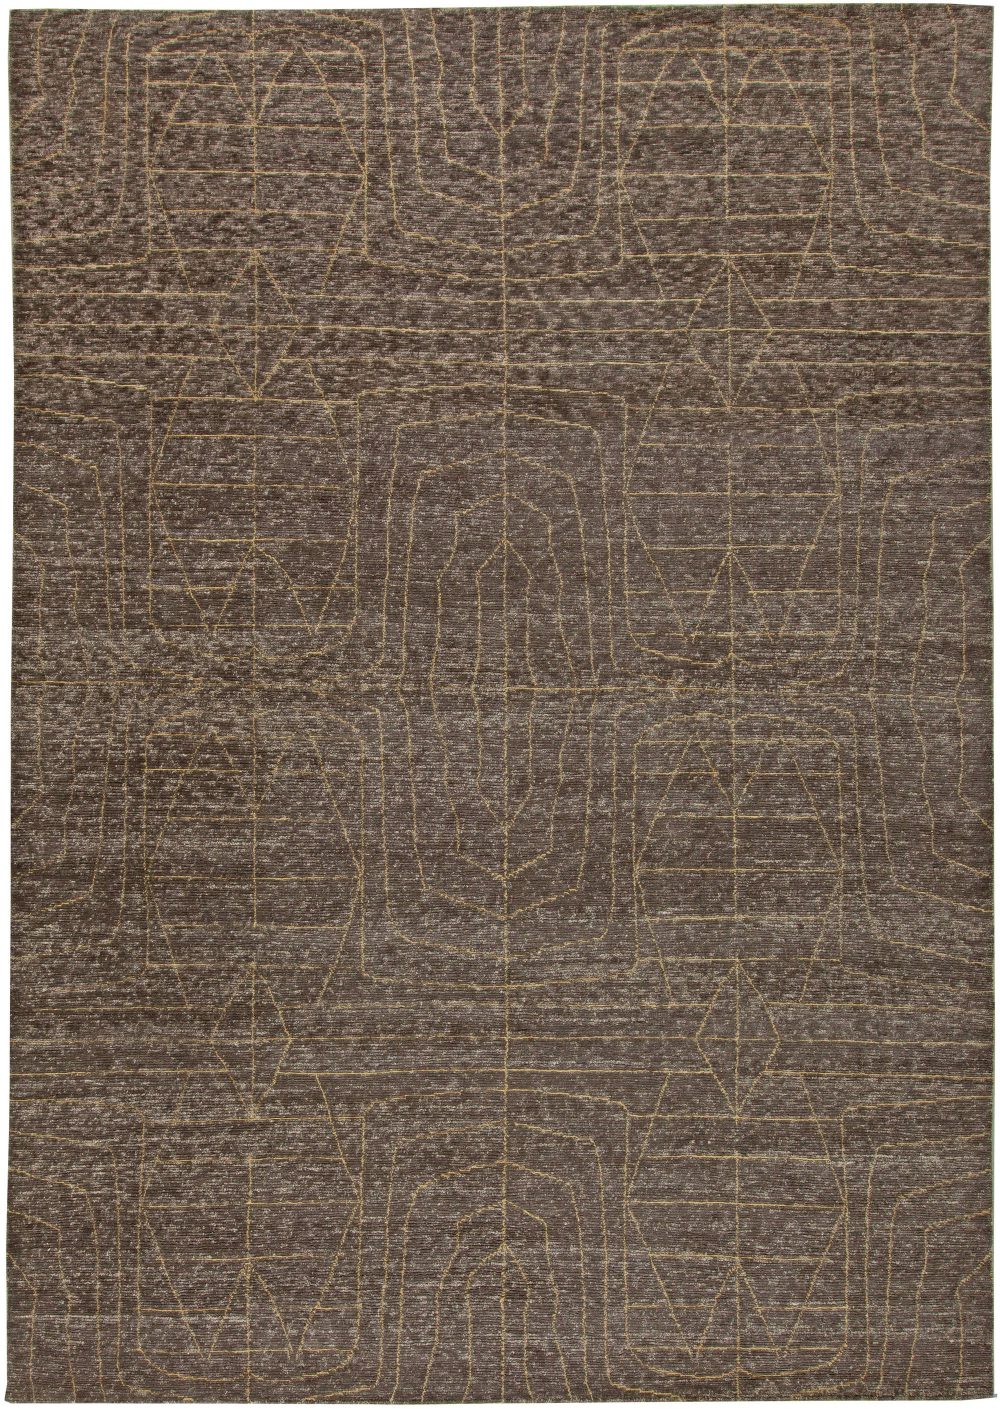 Doris Leslie Blau Collection Moroccan Tribal Design Brown Handmade Wool Rug N11000